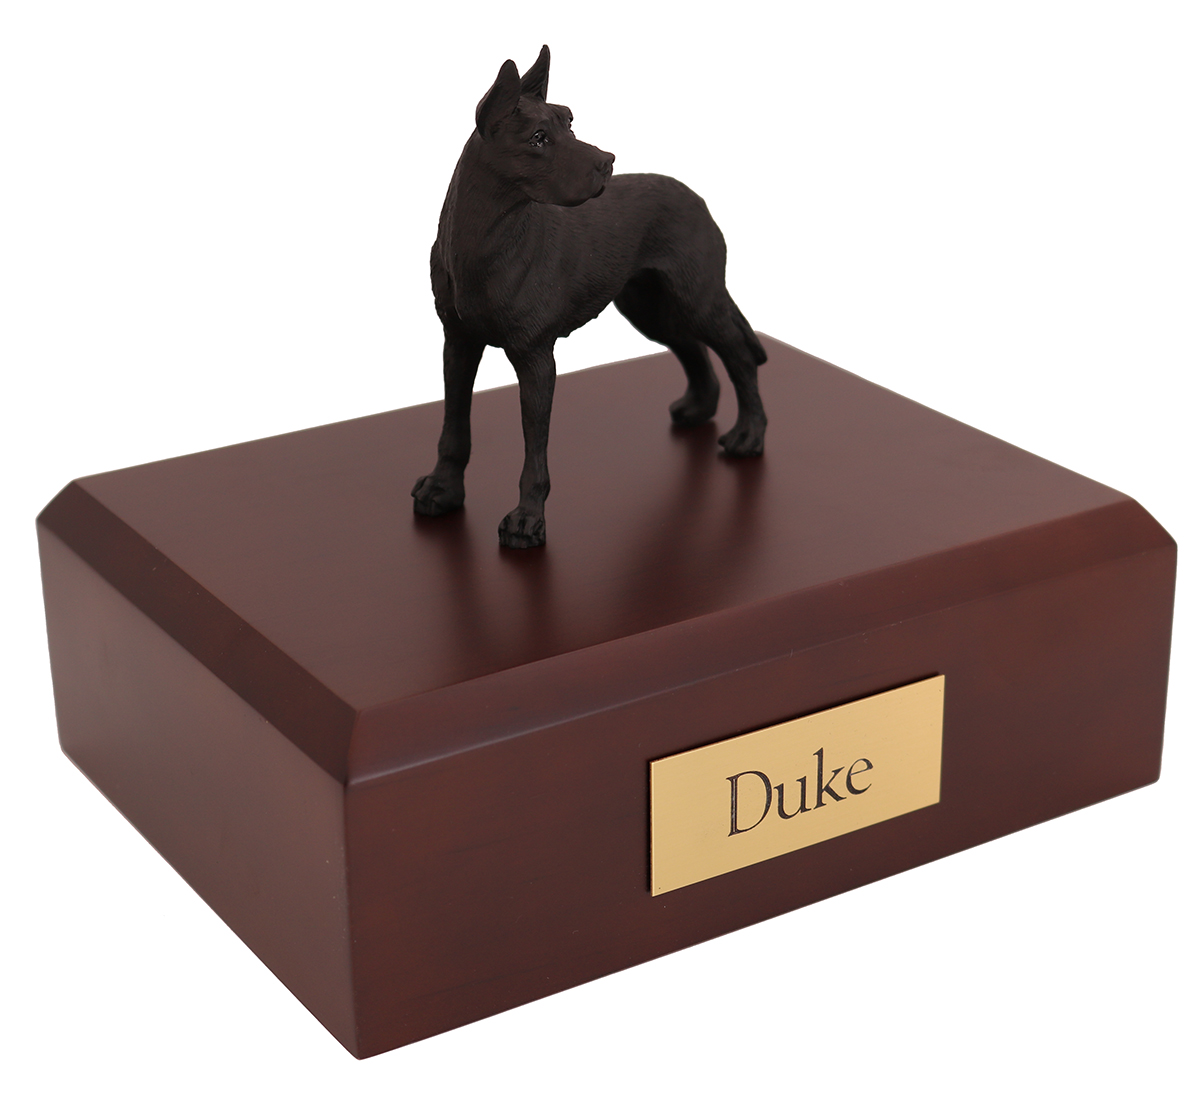 Dog, Great Dane, Black - ears up - Figurine Urn